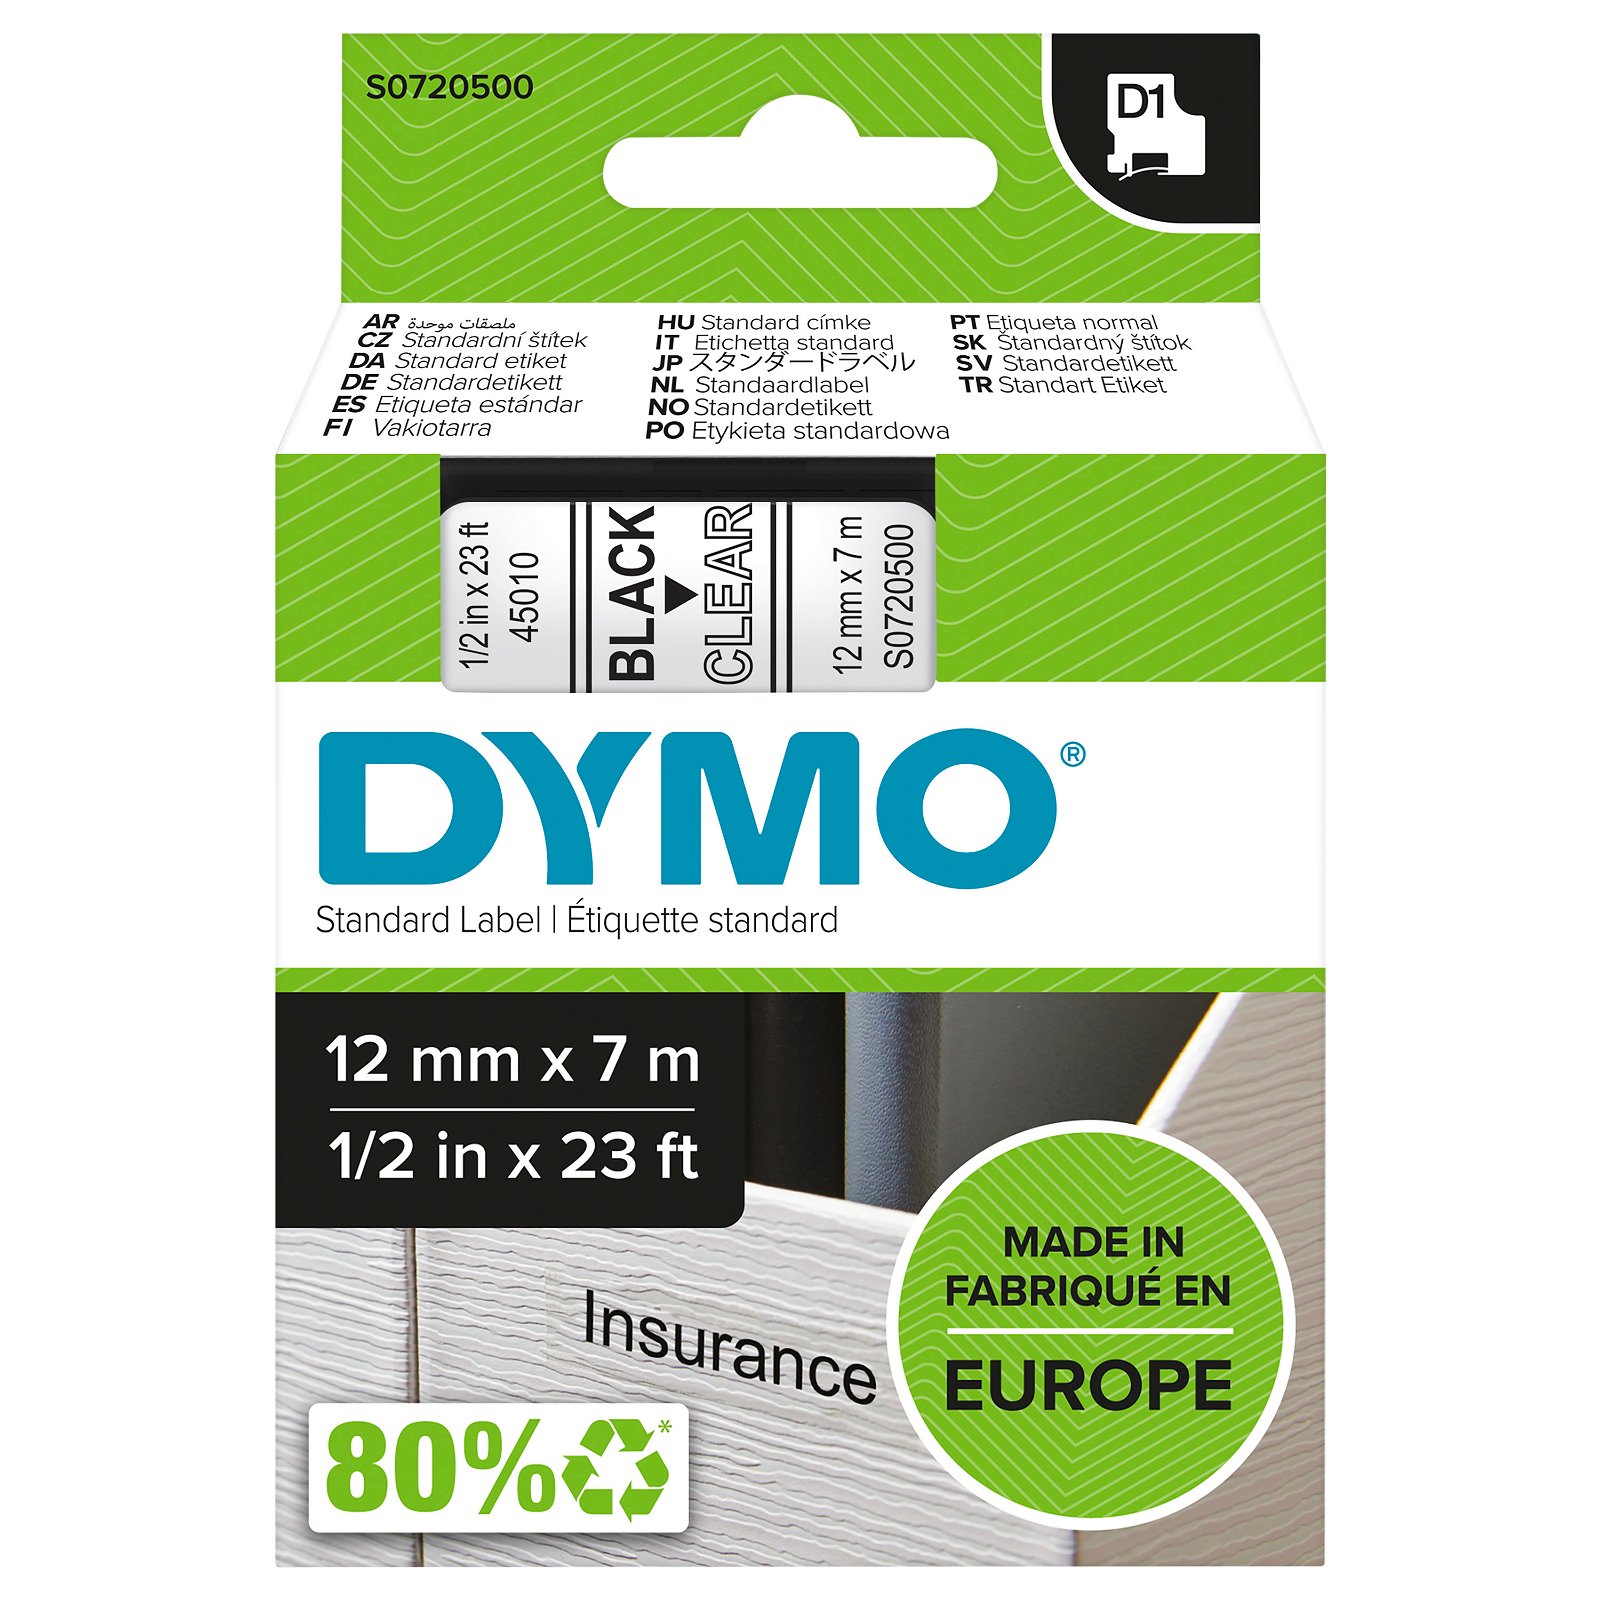 Dymo D1 standard tapekasette 12 mm sort;klar Polyester